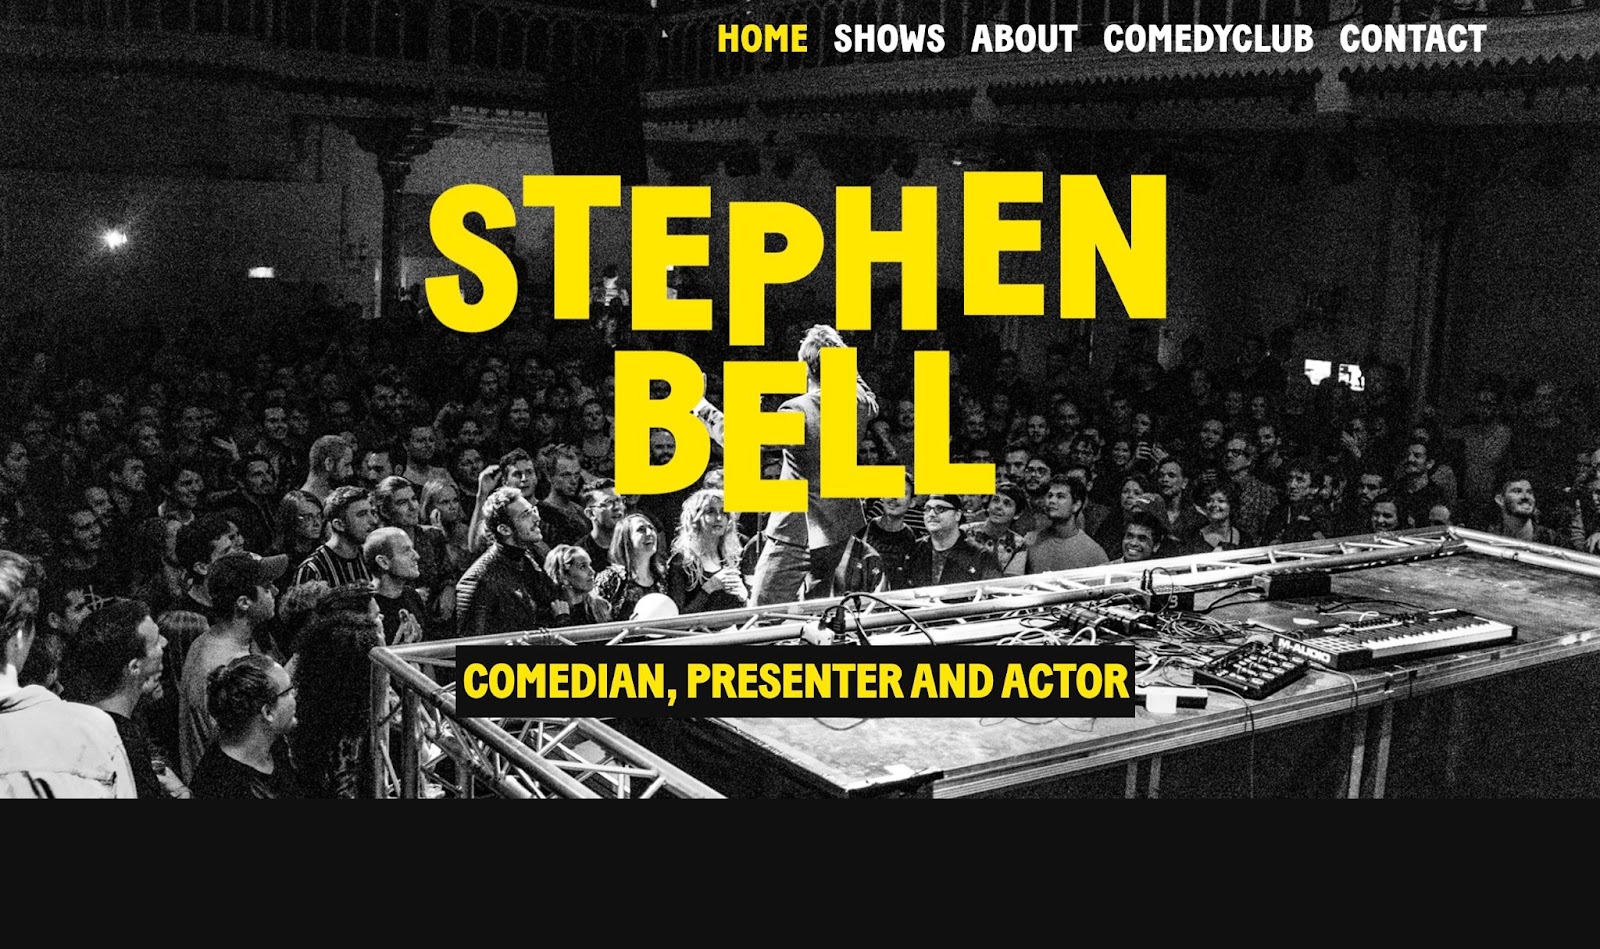 Una foto de una multitud de comedia escuchando al cómico Stephen Bell. Encima de la imagen hay un texto amarillo en negrita que dice "STEPHEN BELL" y debajo dice "COMEDIAN, PRESENTADOR Y ACTOR".